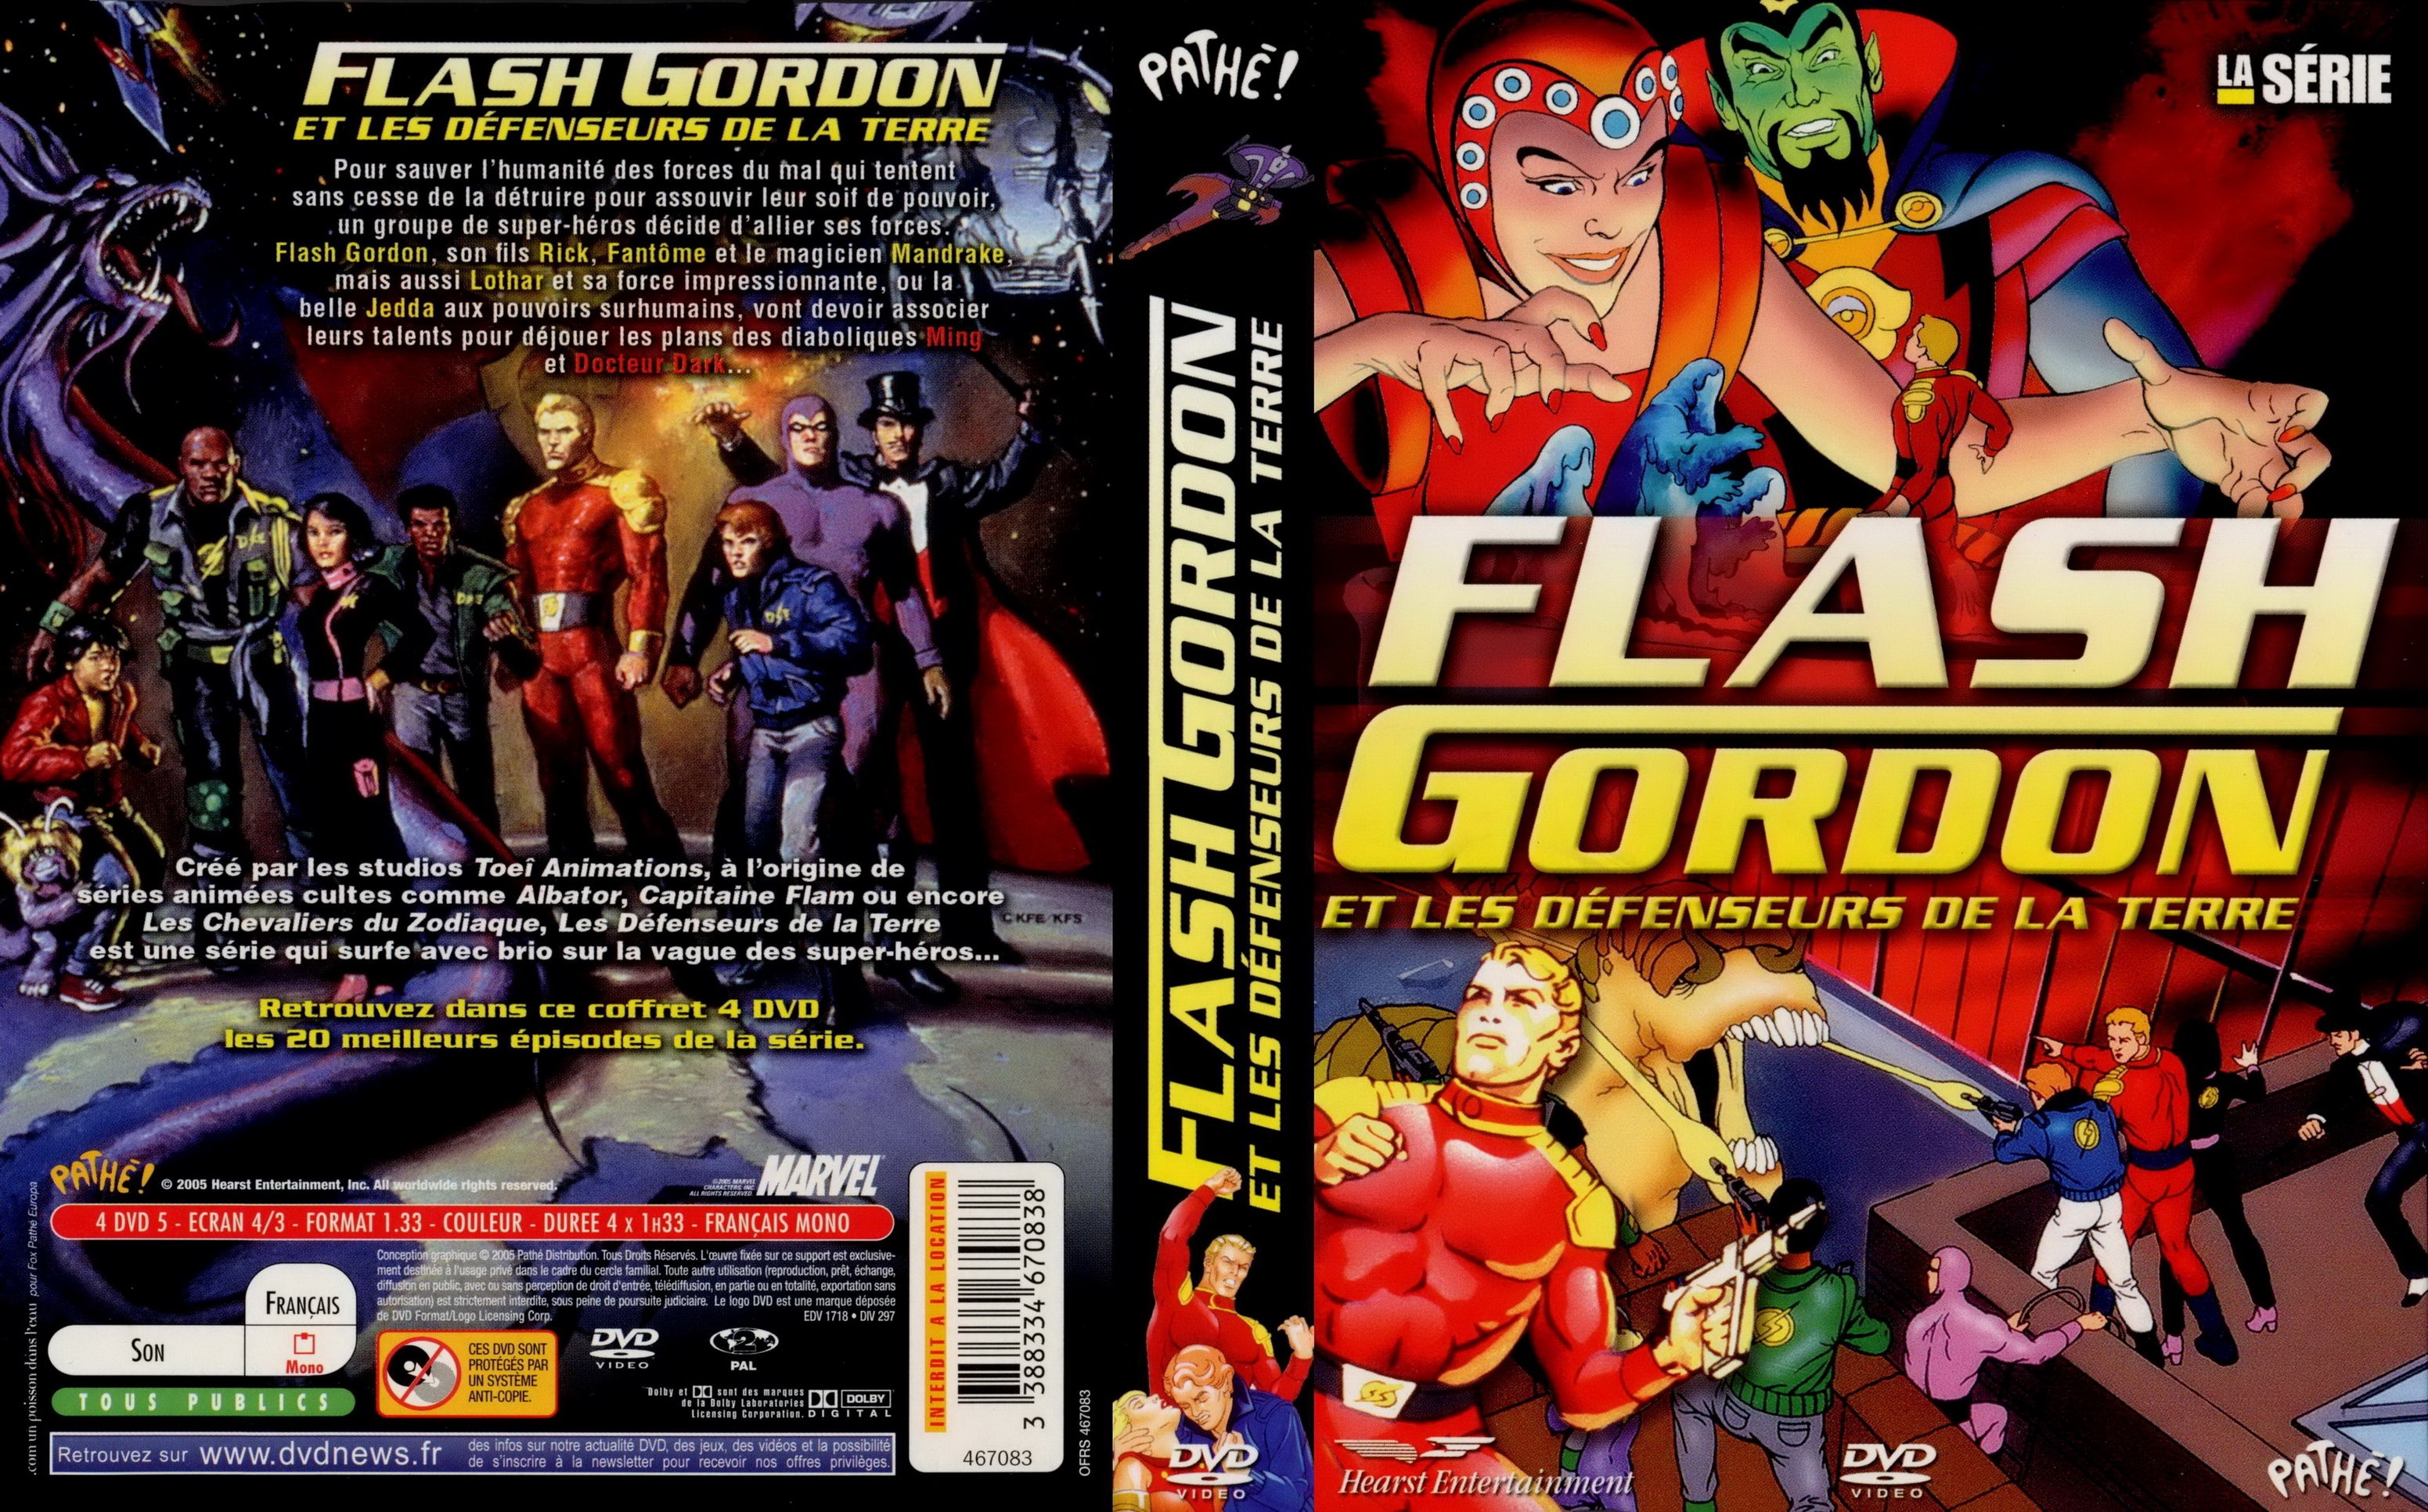 Jaquette DVD Flash Gordon et les defenseurs de la terre v2